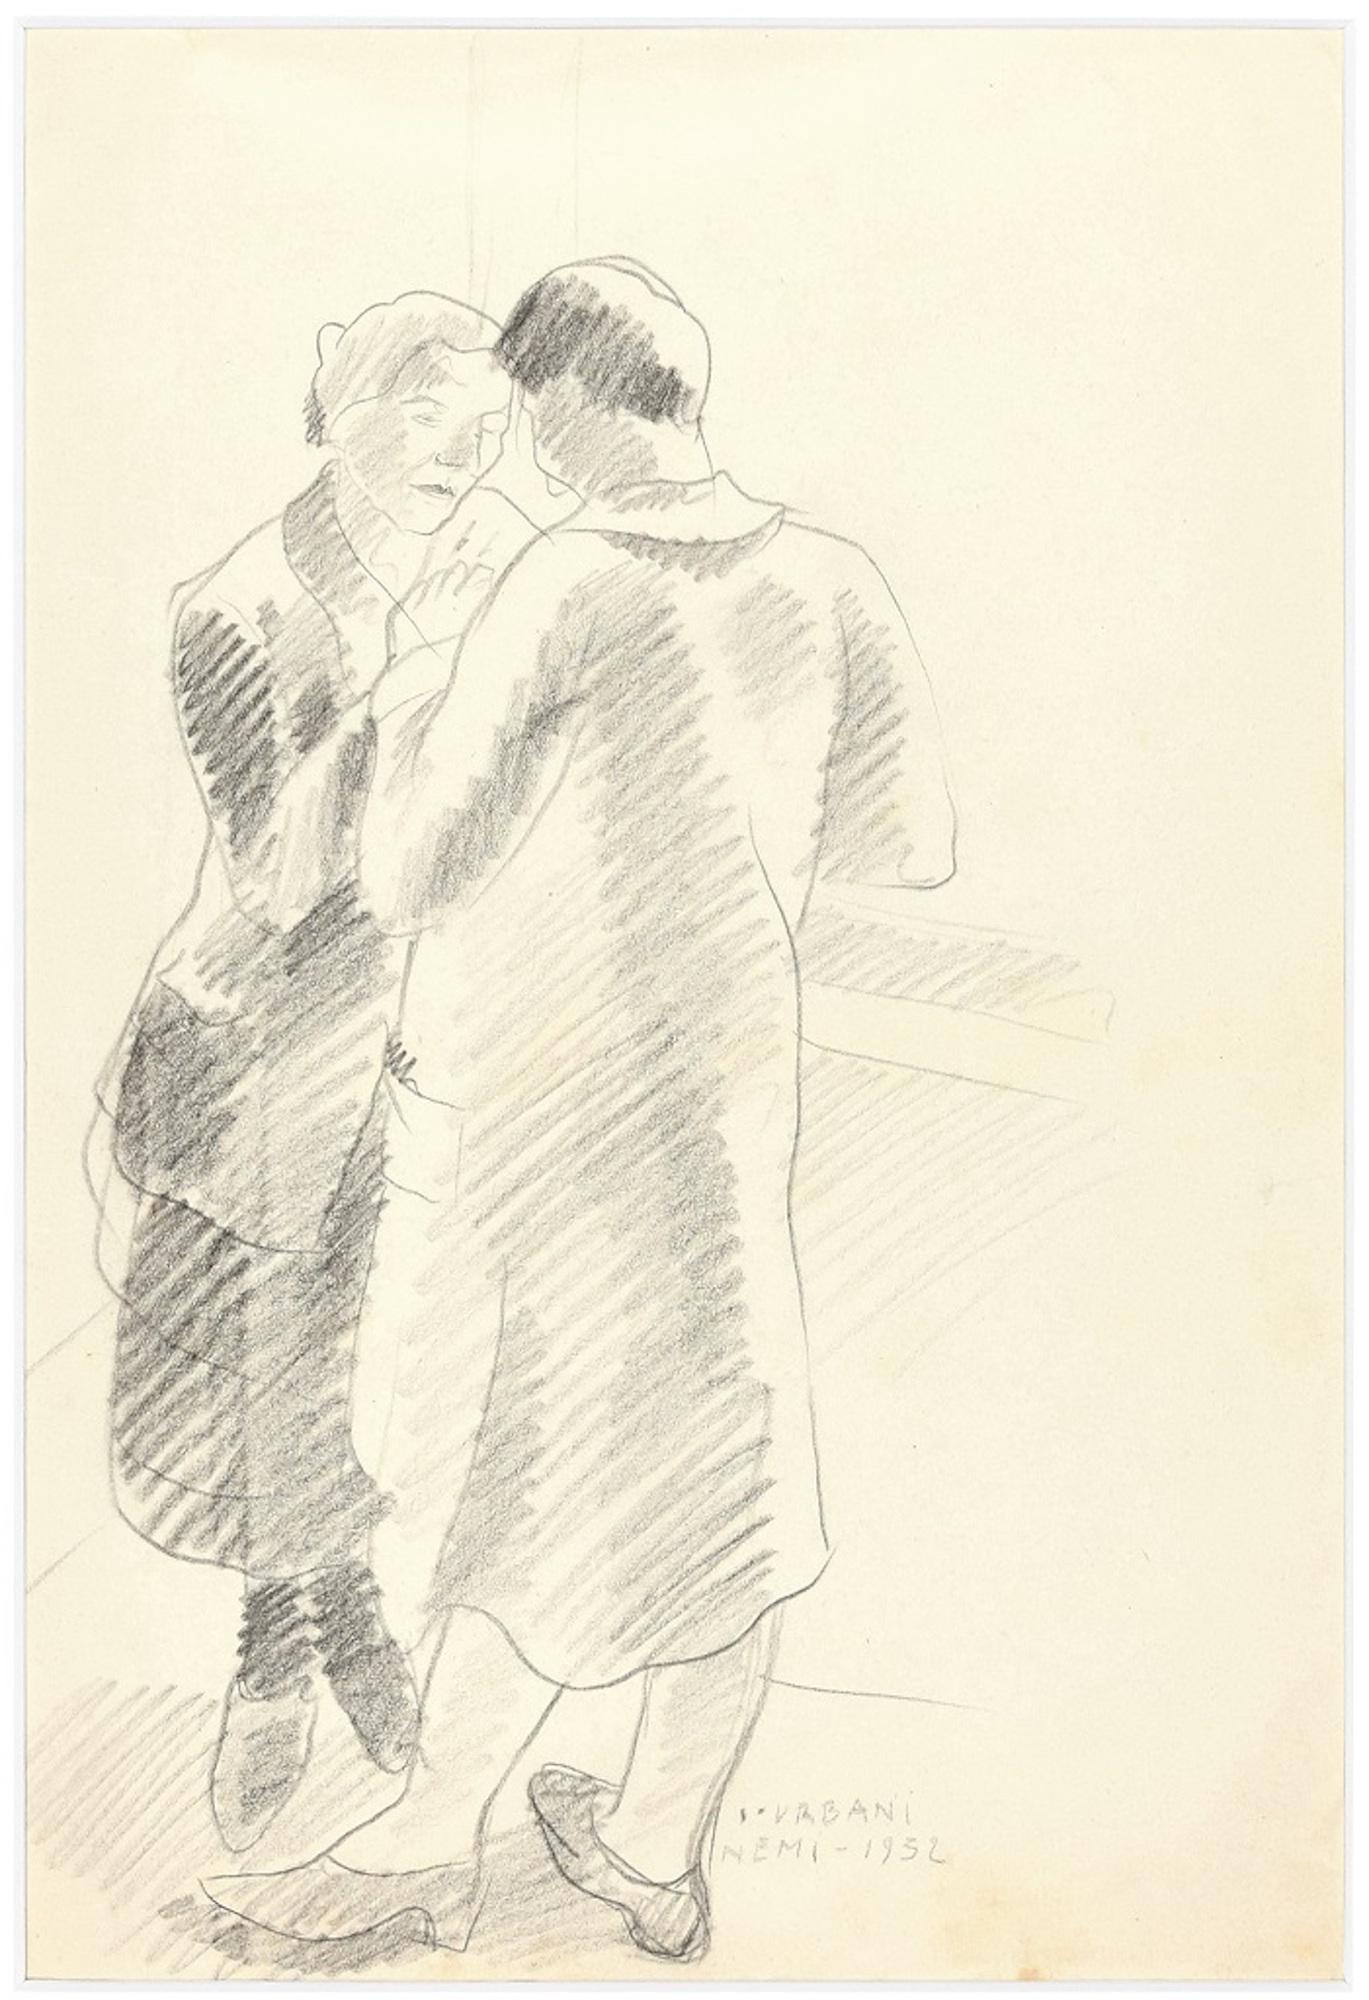 Liebespaar ist eine hervorragende Original-Bleistiftzeichnung auf cremefarbenem Papier aus dem Jahr 1932 des italienischen Künstlers Ildebrando Urbani.

Handsigniert in Großbuchstaben und datiert in Bleistift am unteren rechten Rand "Urbani / Nemi,